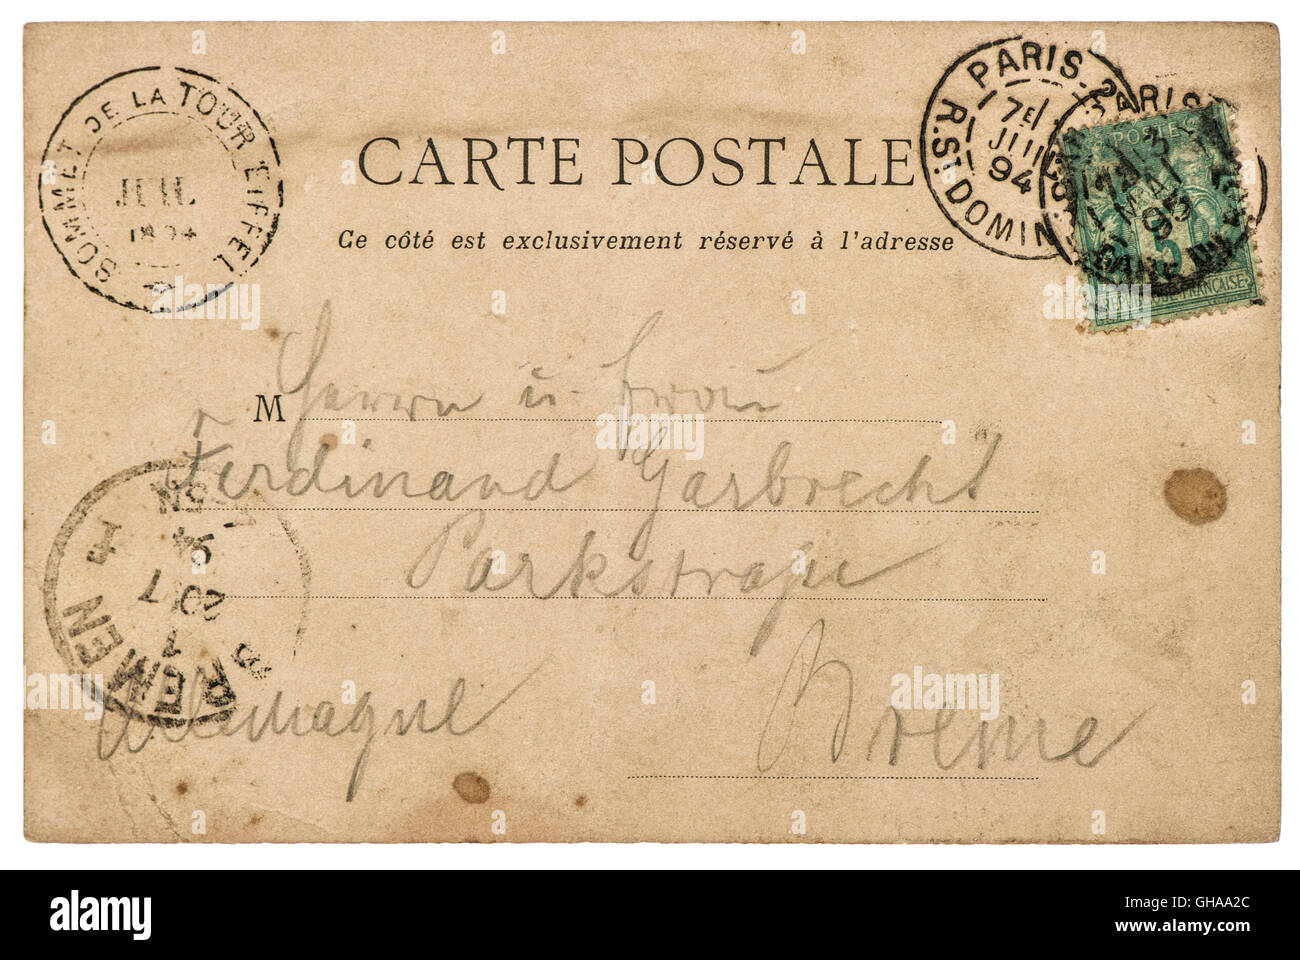 Vintage carte postale manuscrite illisible avec lettre undefined texte. Vieux papiers texture background Banque D'Images